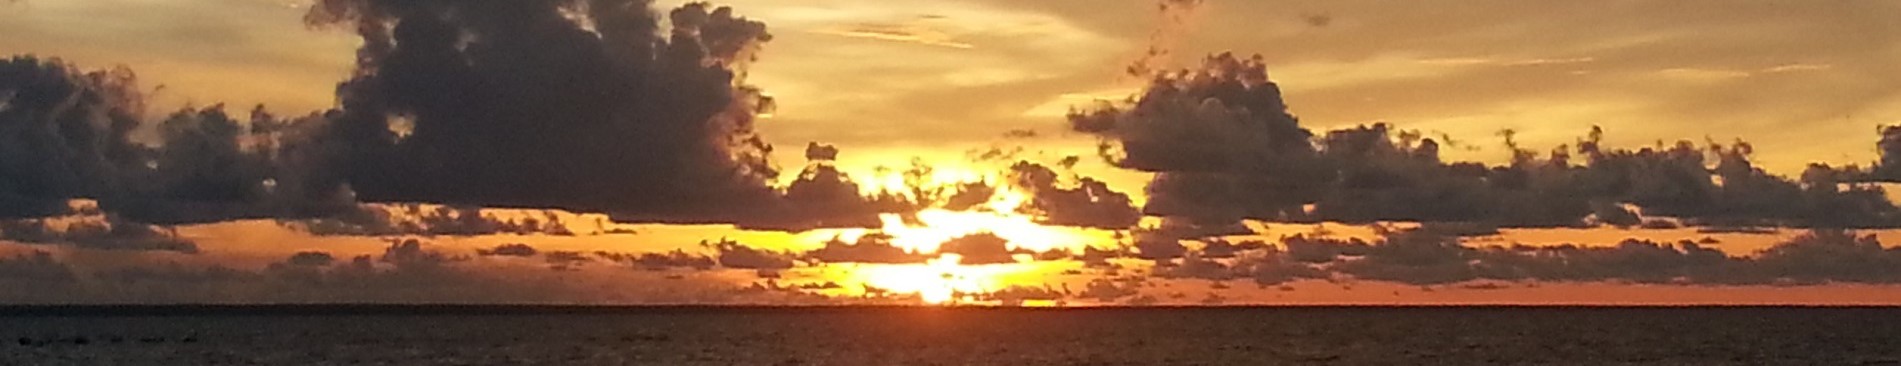 Darwin Sunset © Holidays Beckon